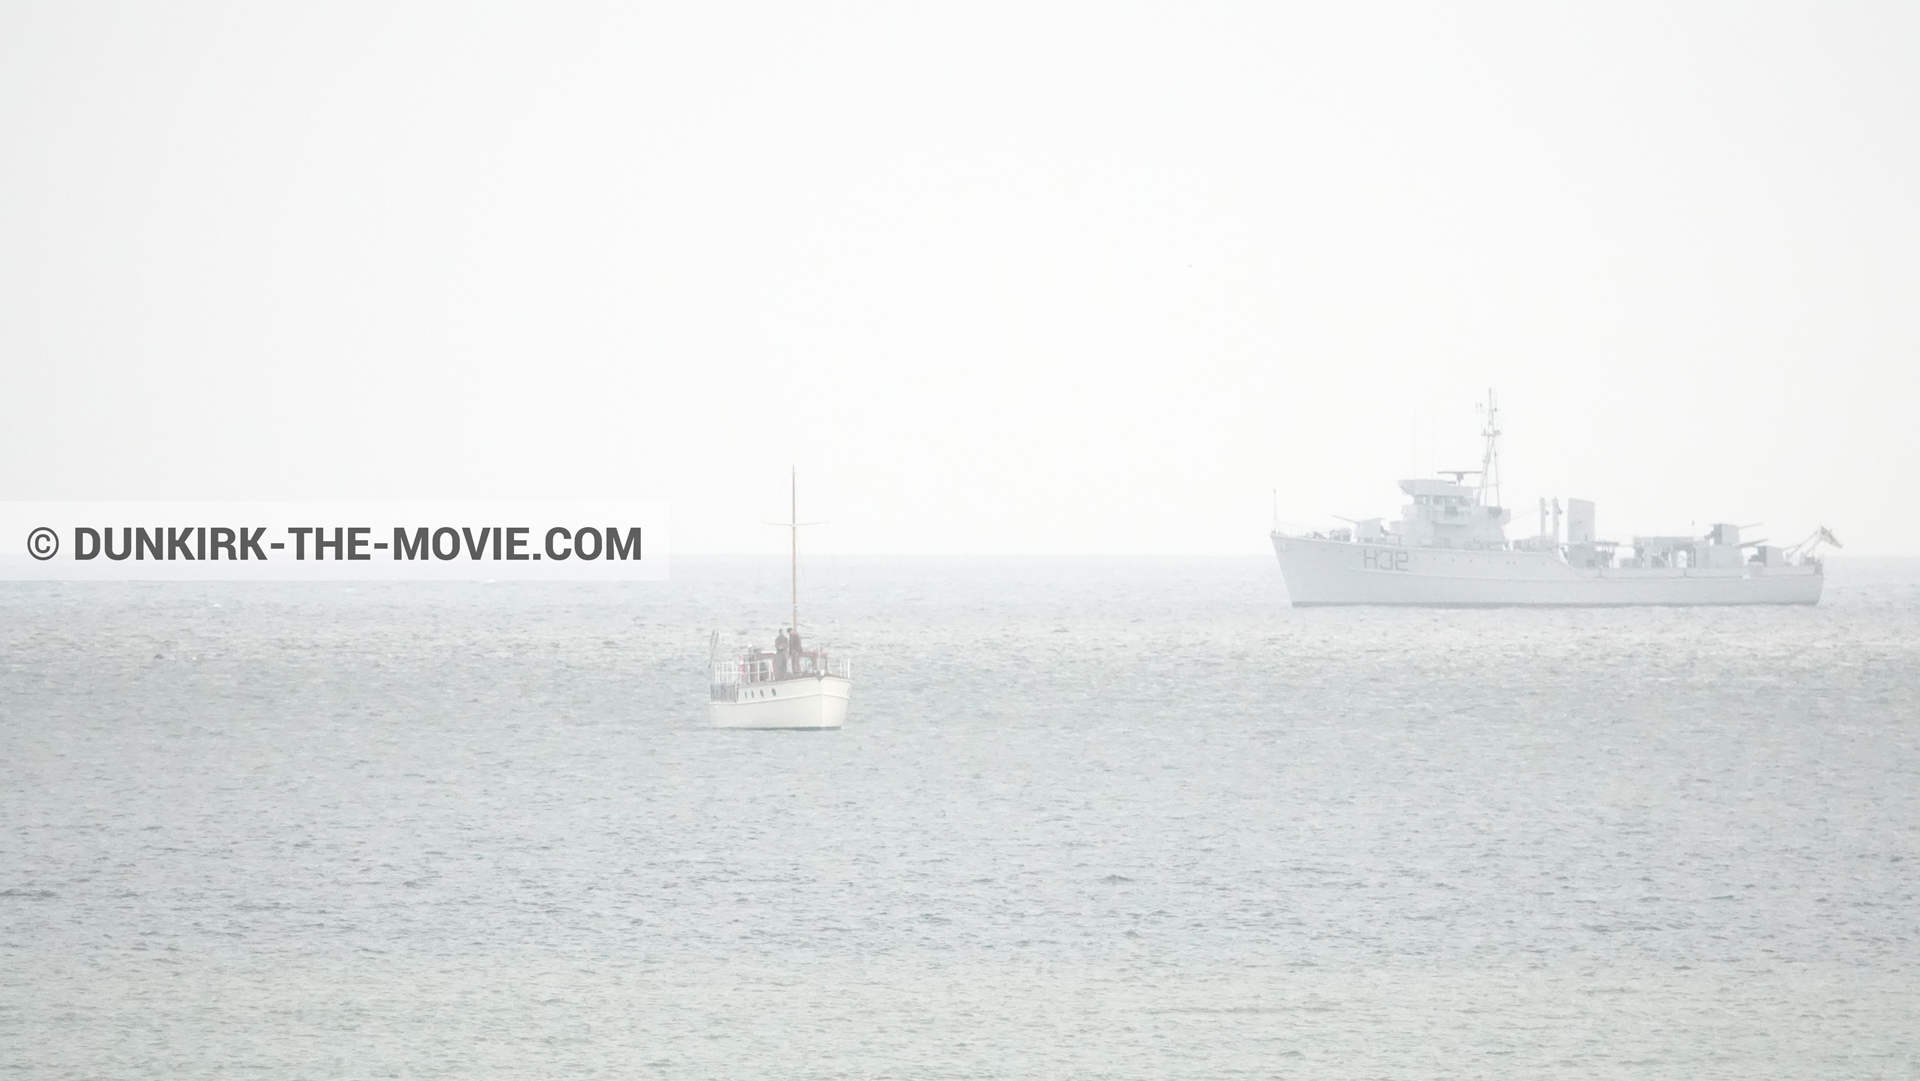 Fotos con barco, H32 - Hr.Ms. Sittard,  durante el rodaje de la película Dunkerque de Nolan